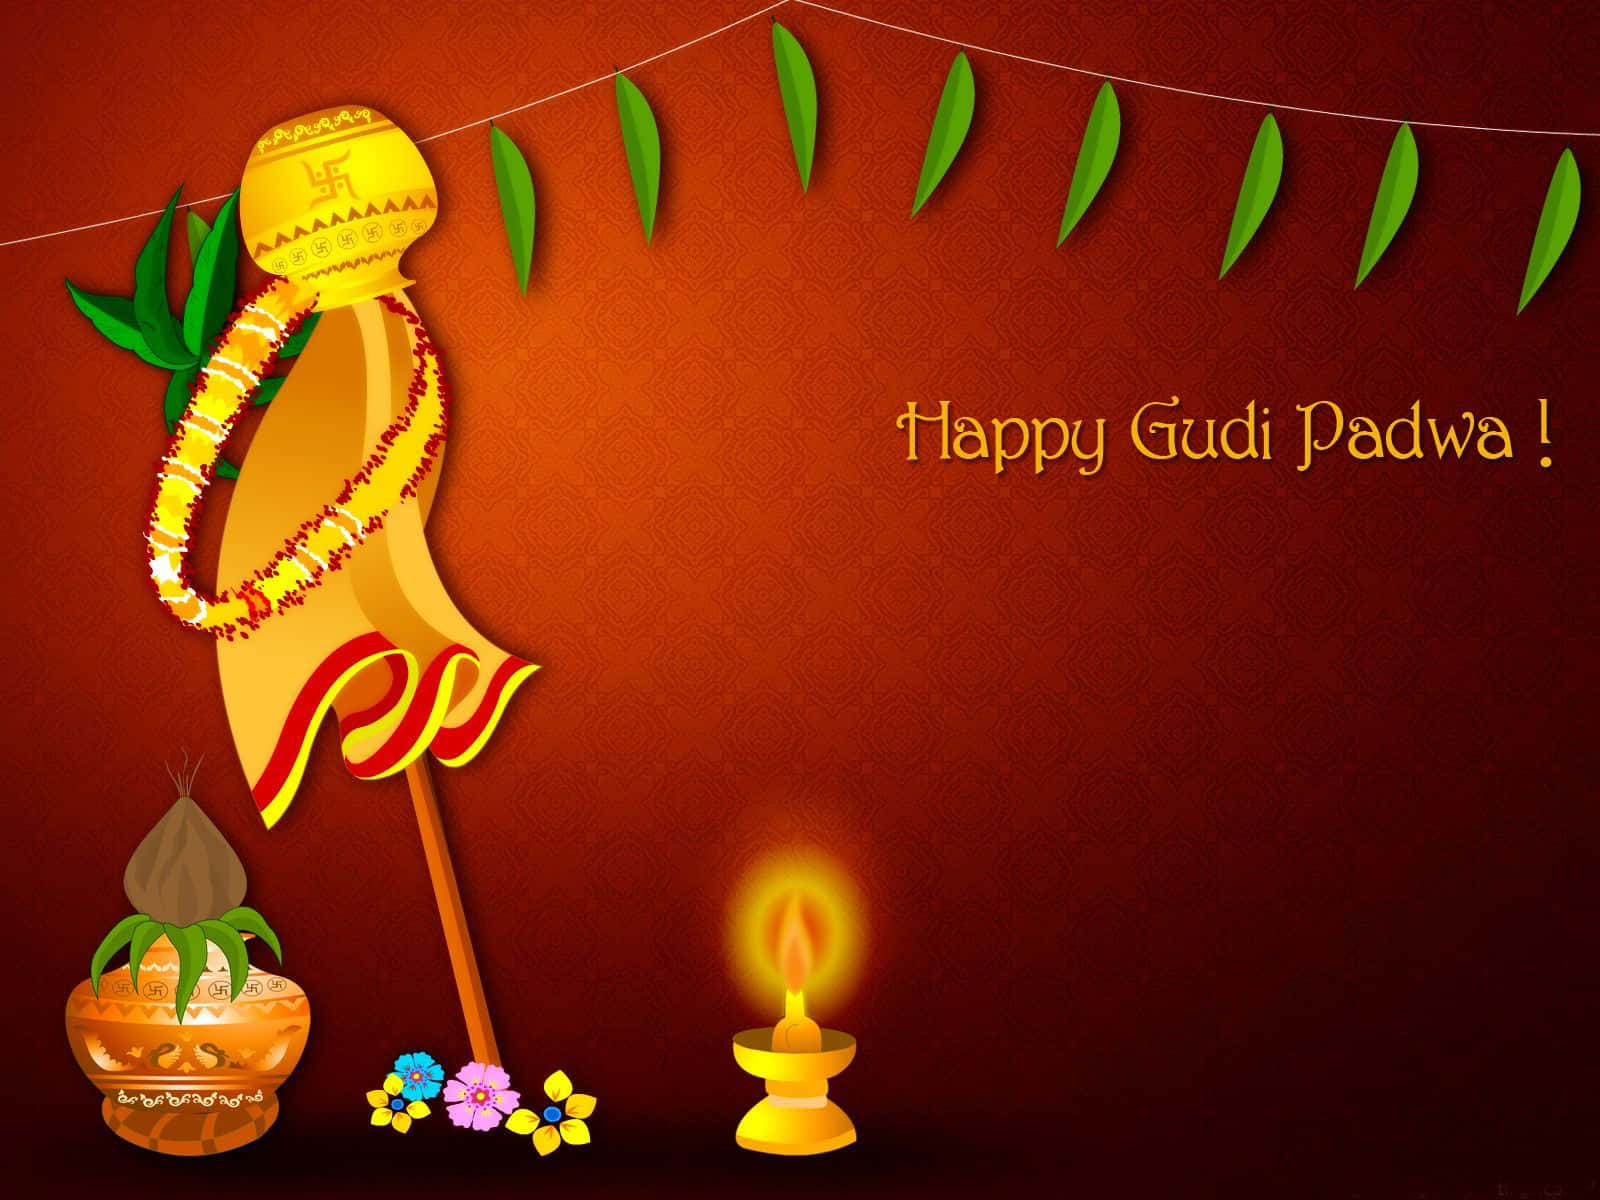 Feiernsie Den Beginn Eines Neuen Jahres Mit Gudi Padwa!